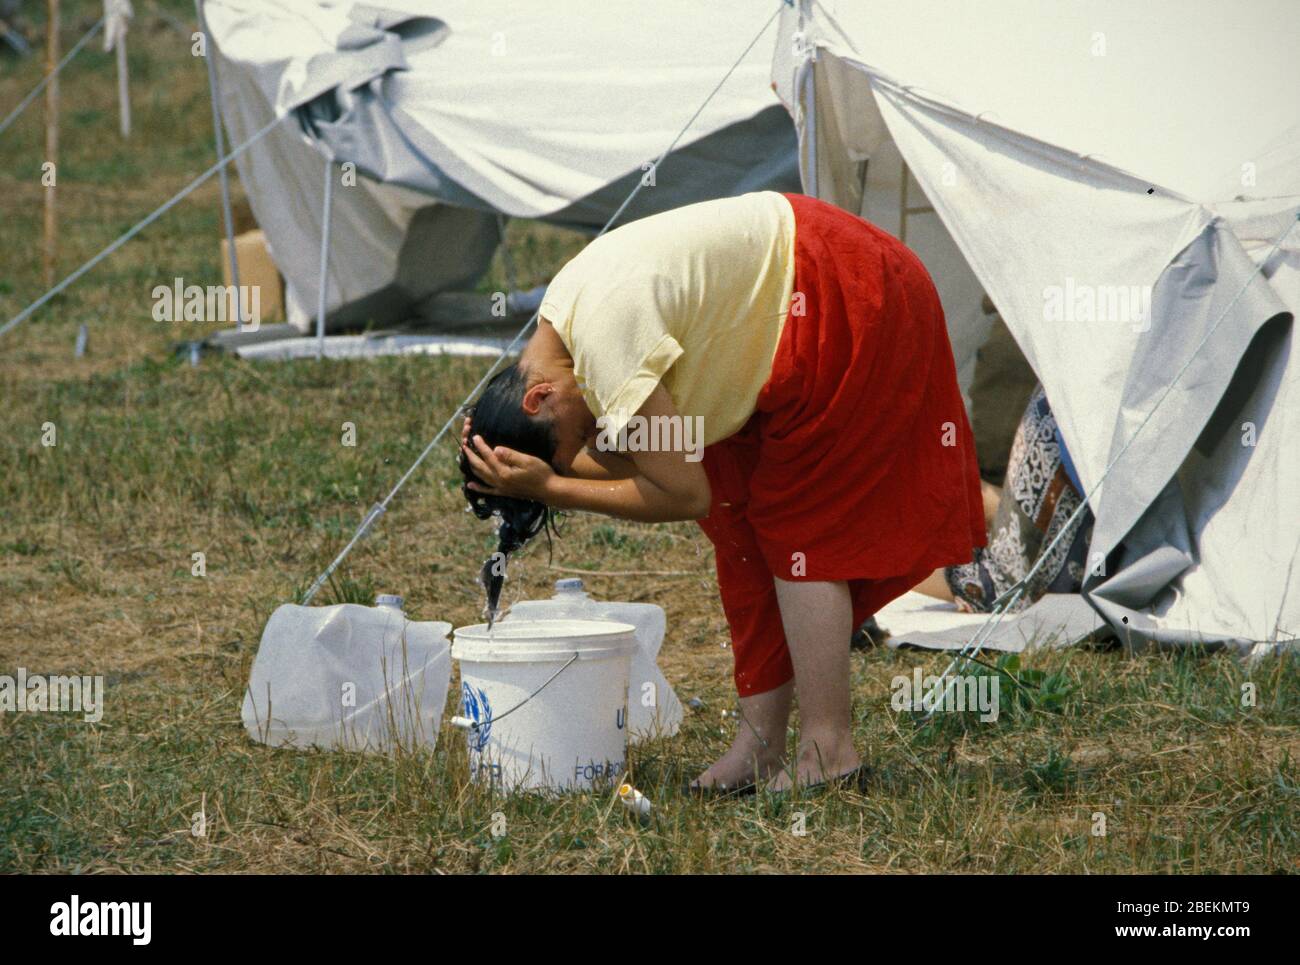 1995 - Frau, die sich auf dem Flugplatz Tuzla Haare wäscht, ein temporäres UN-Flüchtlingslager für bosnische Muslime, die vor dem Massaker von Srebrenica während des Bosnienkrieges fliehen Stockfoto